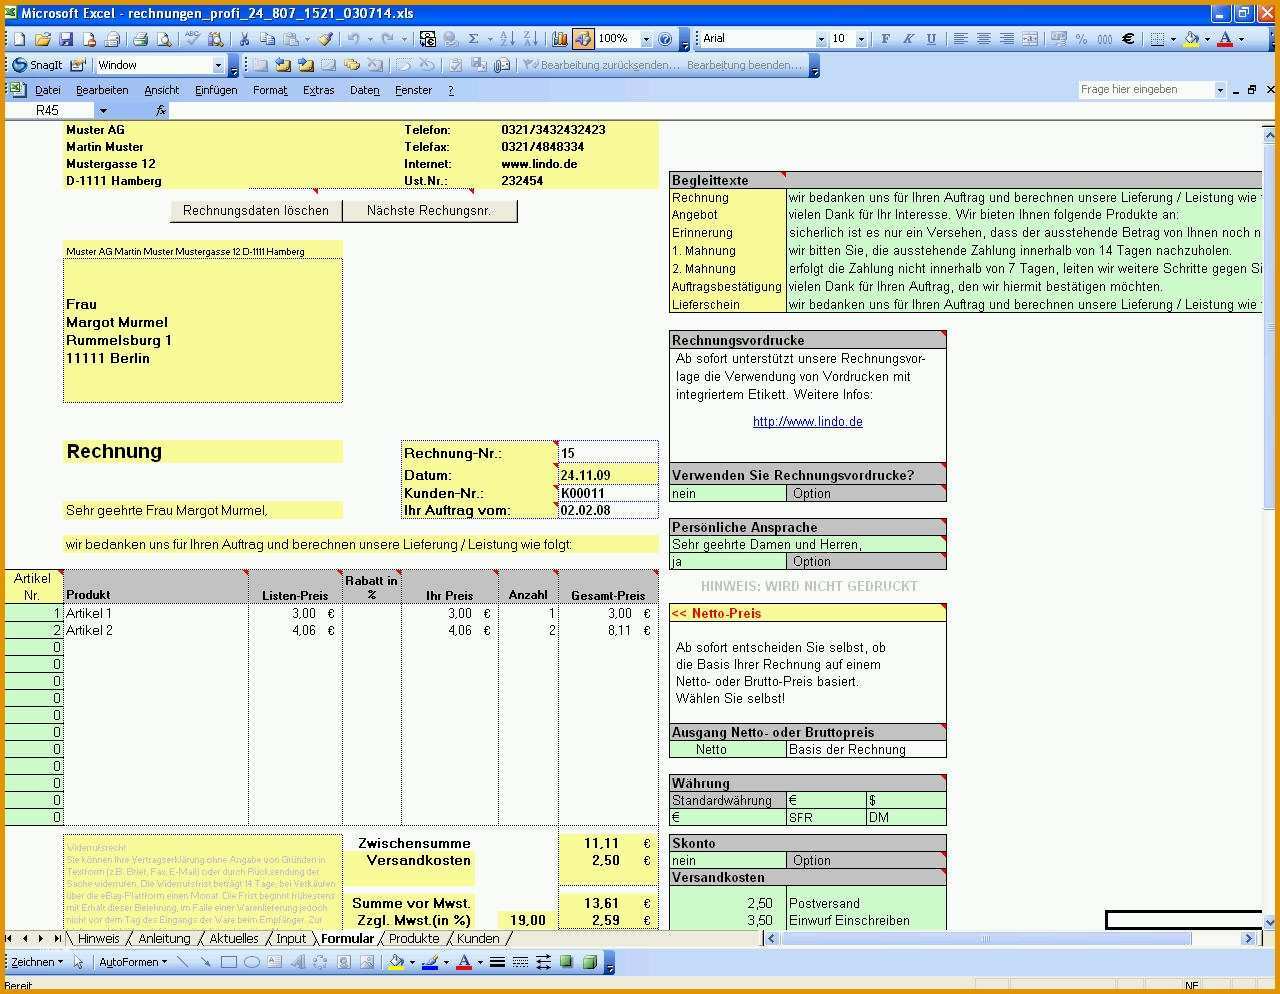 Hervorragend Rechnungstool In Excel Vorlage Zum Download